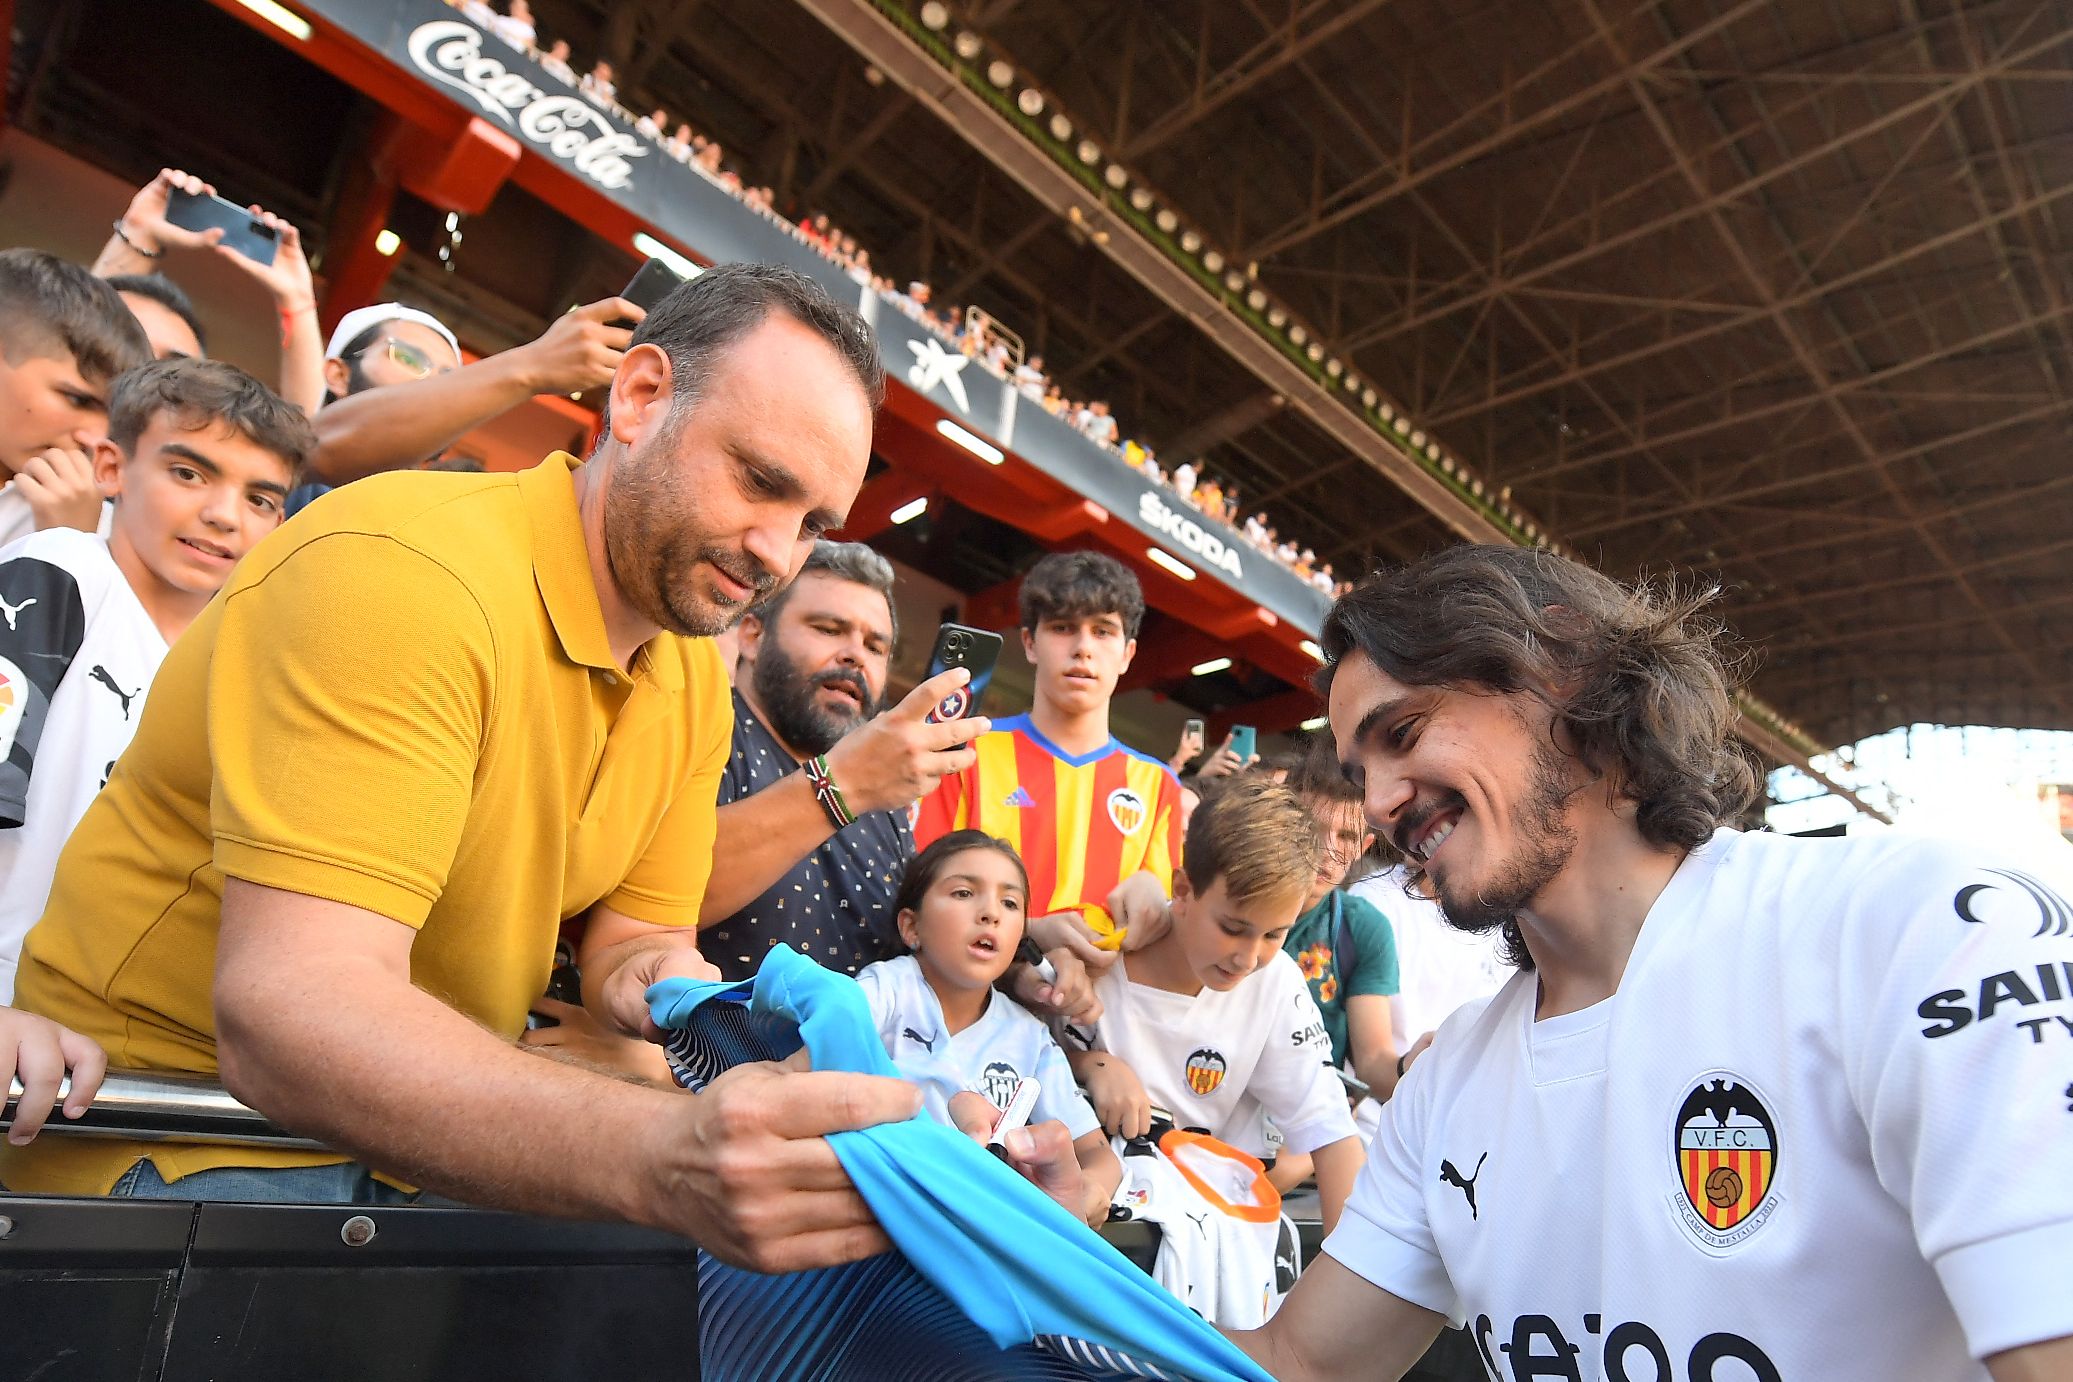 Los aficionados le solicitaron autógrafos y fotografías al goleador uruguayo. (Foto Prensa Libre: AFP)